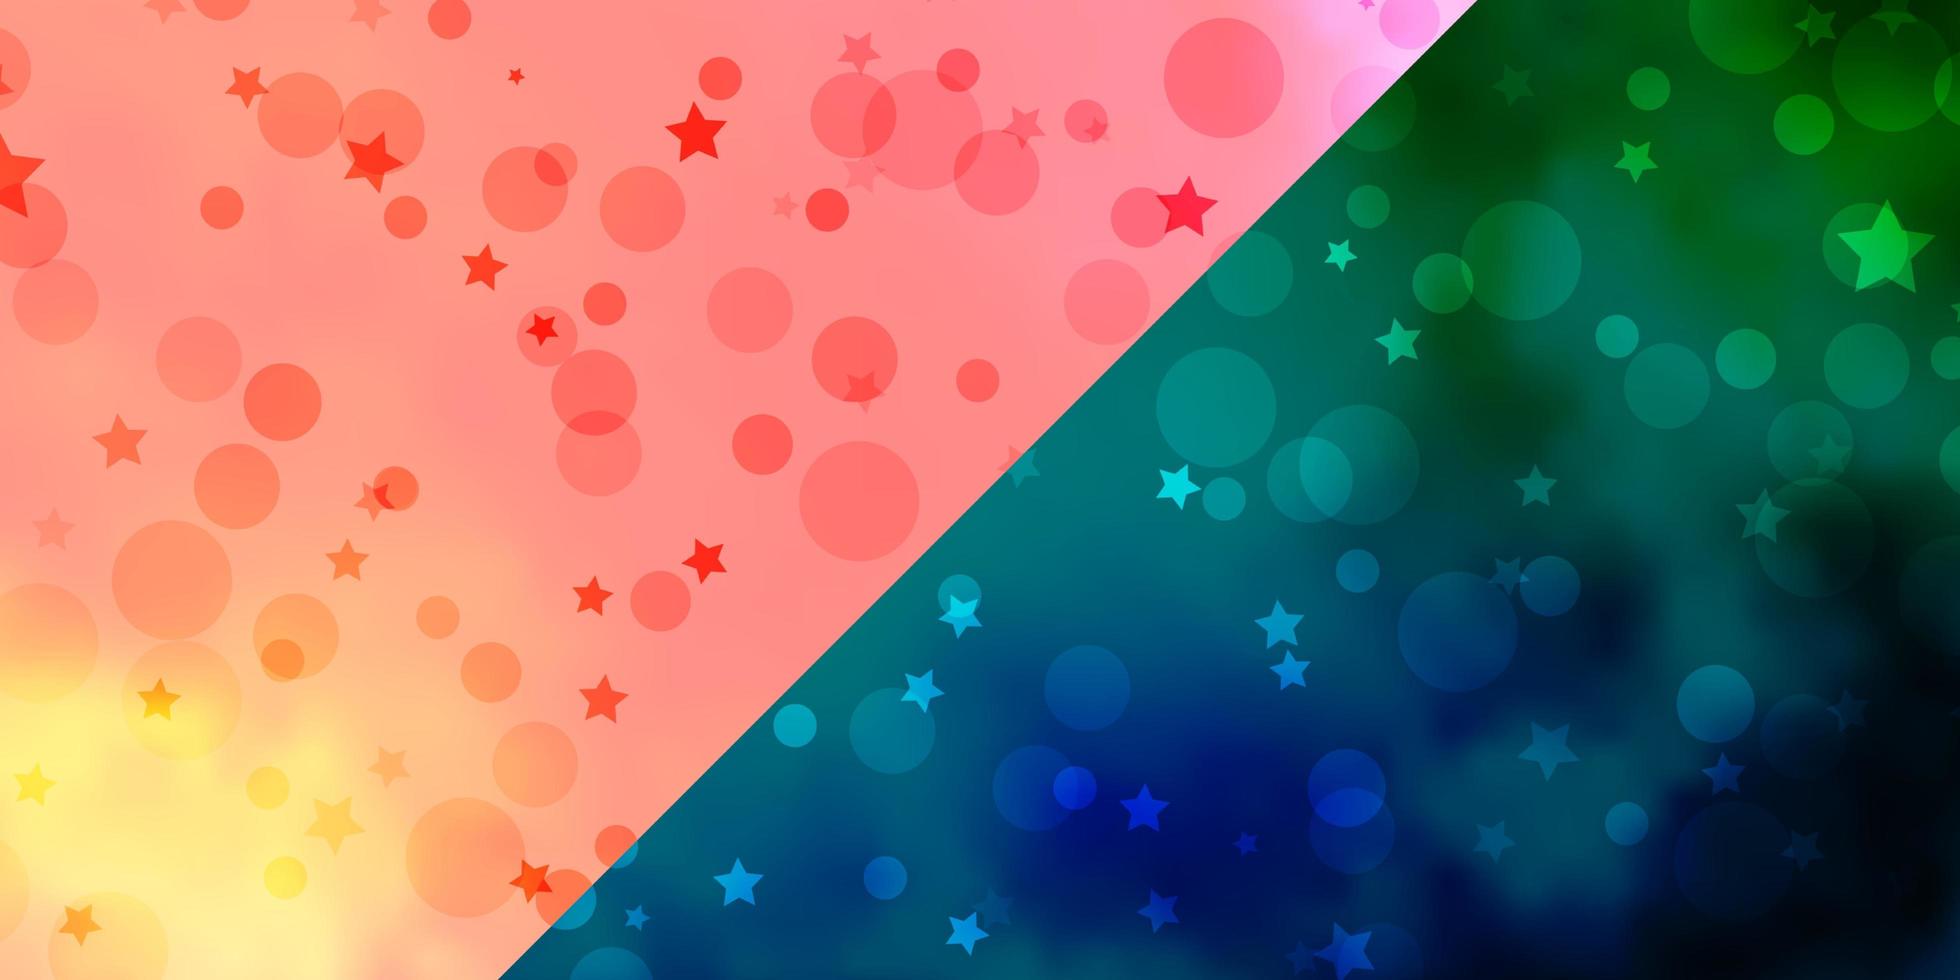 sfondo vettoriale con cerchi stelle disegno astratto in stile sfumato con bolle stelle modello per biglietti da visita siti web business